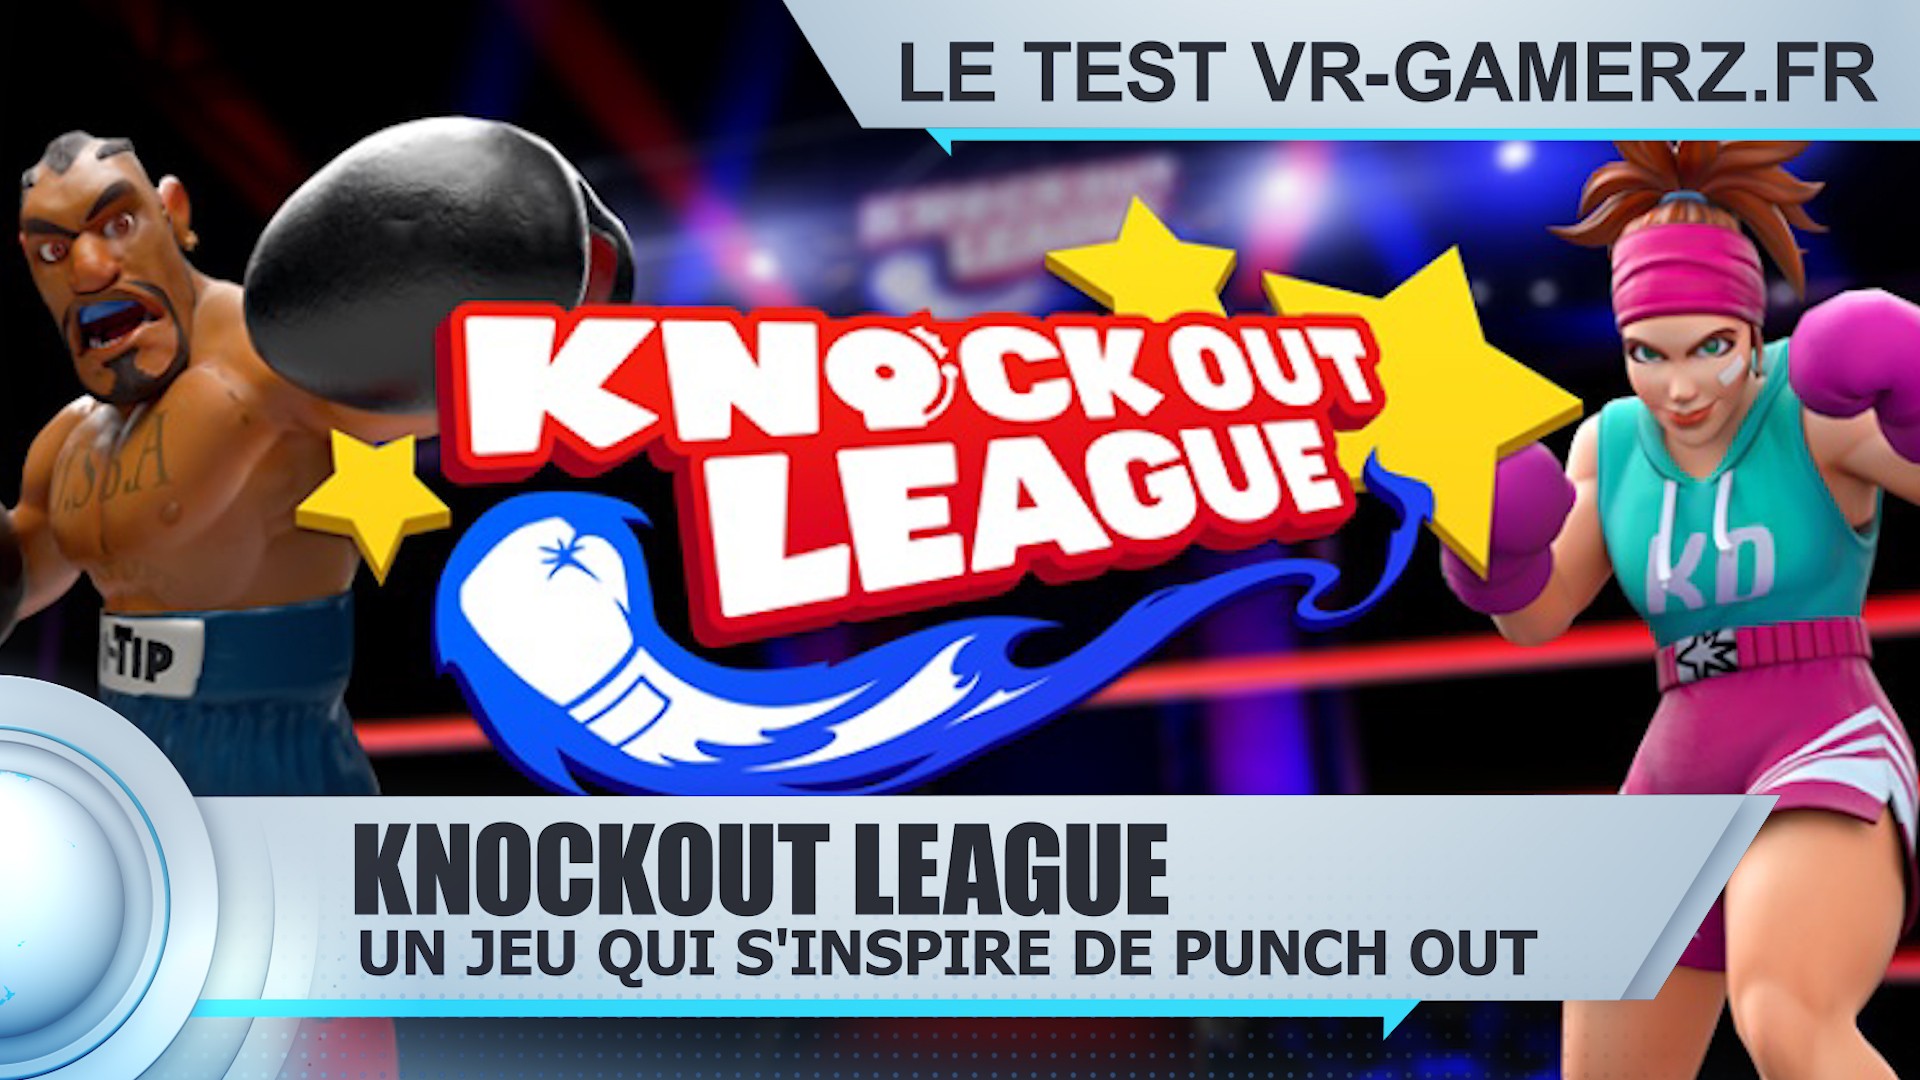 Test Knockout league Oculus quest